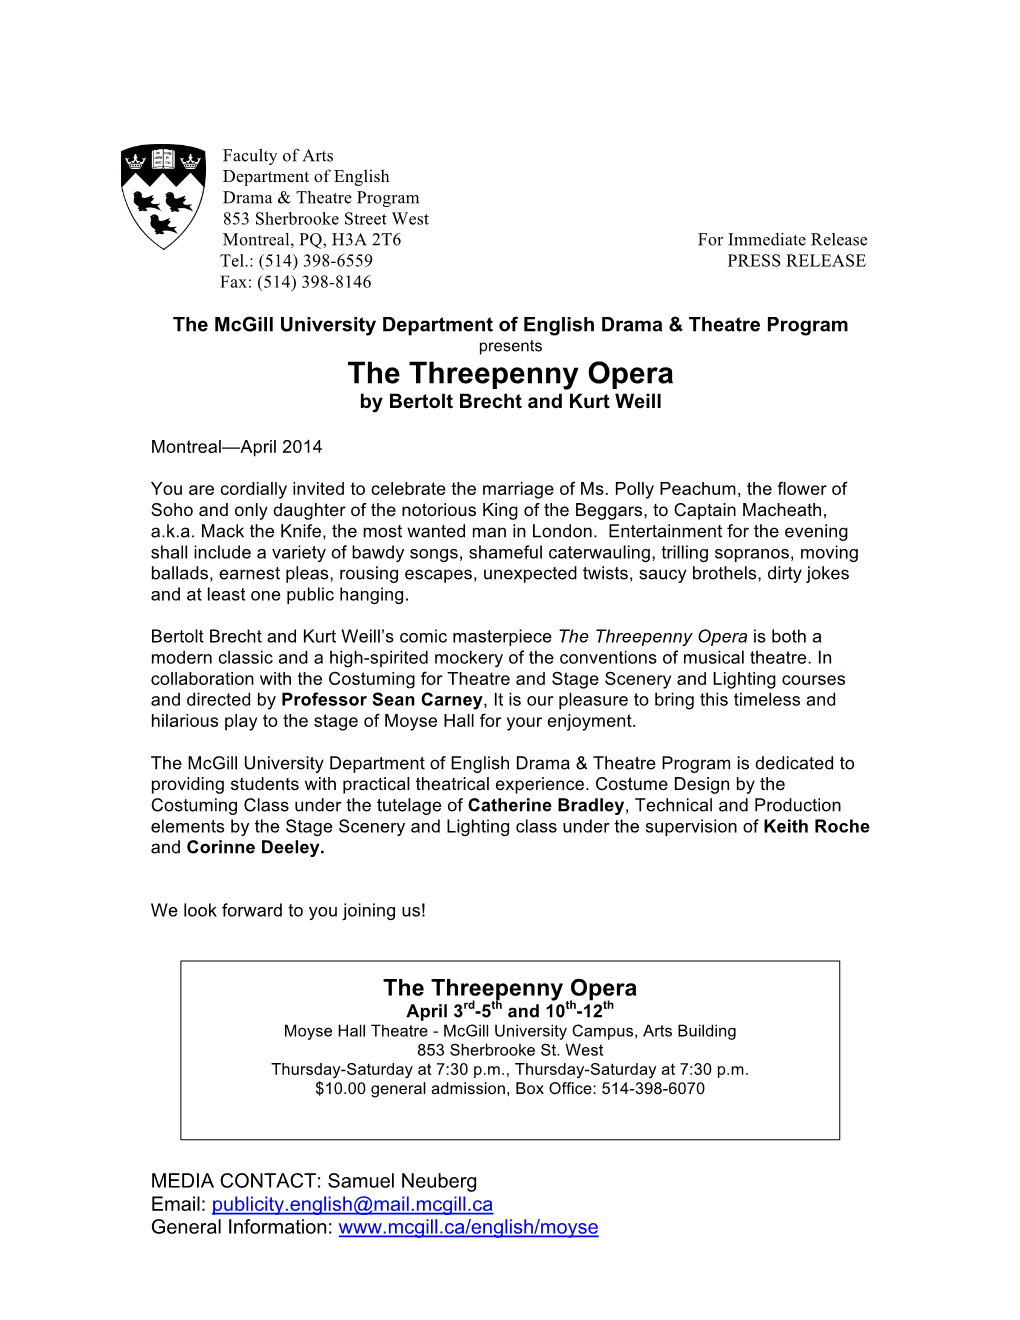 The Threepenny Opera by Bertolt Brecht and Kurt Weill